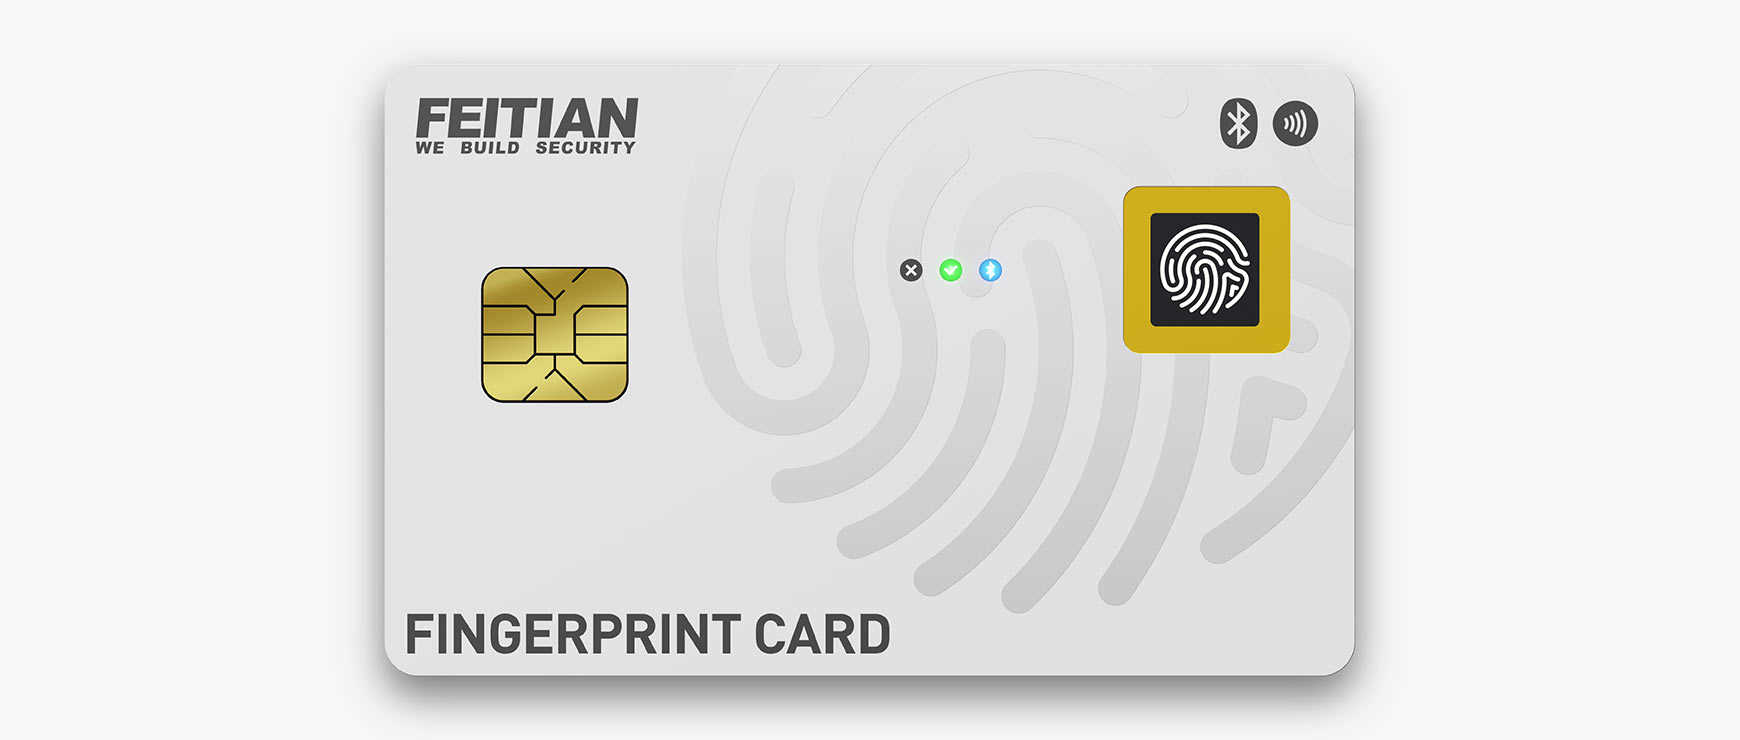 mfa_fingerprint_card